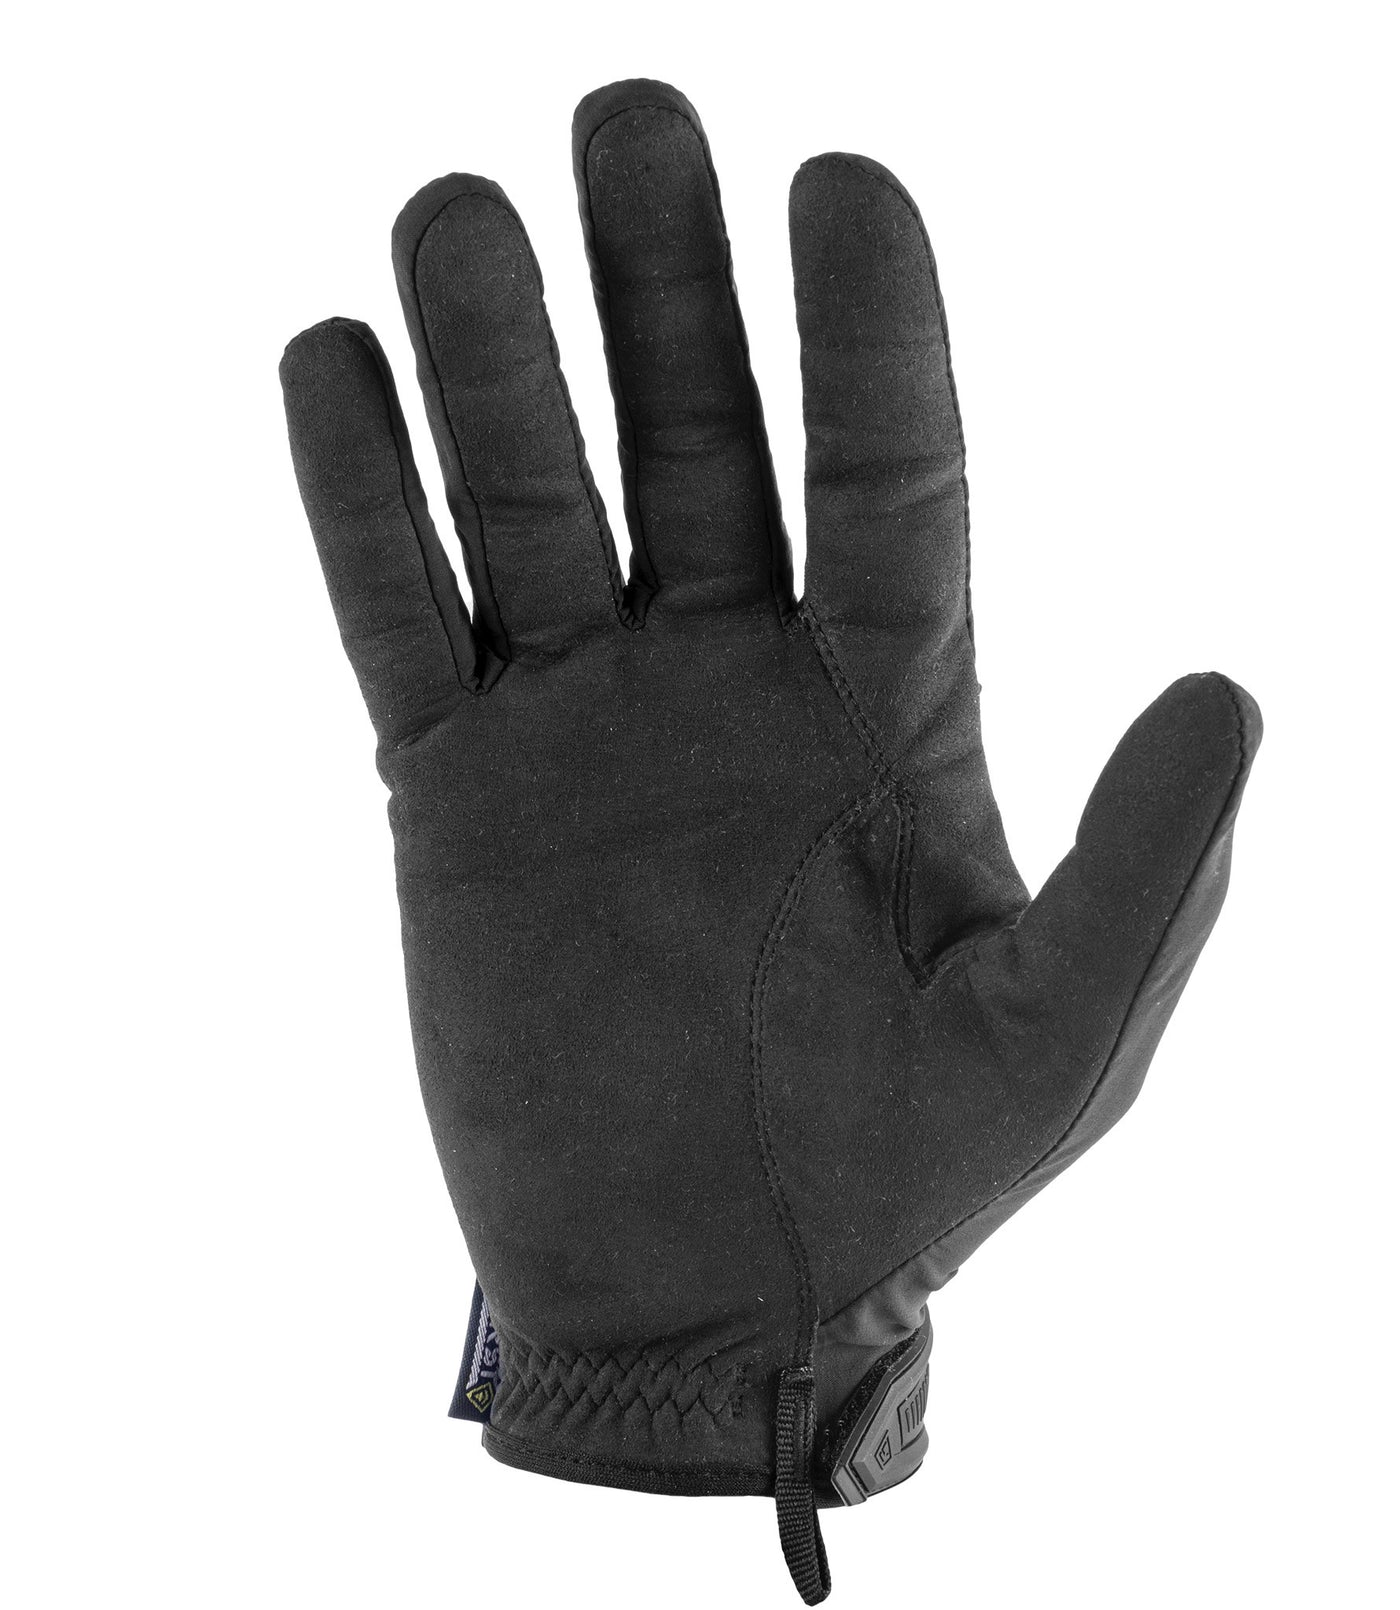 Palm of Men's Slash Patrol Glove in Black